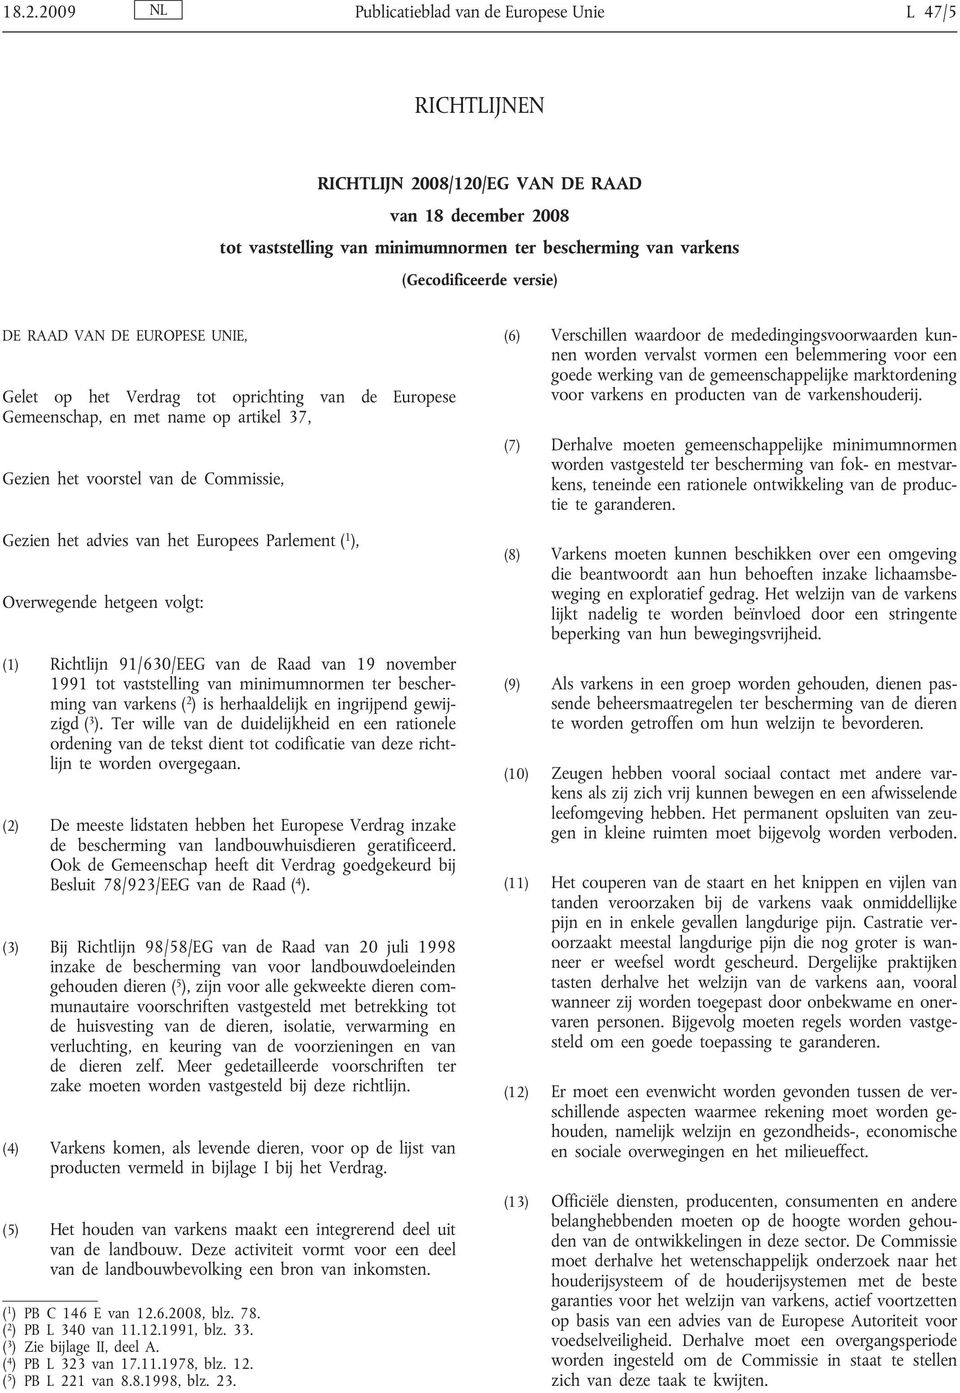 Europees Parlement ( 1 ), Overwegende hetgeen volgt: (1) Richtlijn 91/630/EEG van de Raad van 19 november 1991 tot vaststelling van minimumnormen ter bescherming van varkens ( 2 ) is herhaaldelijk en